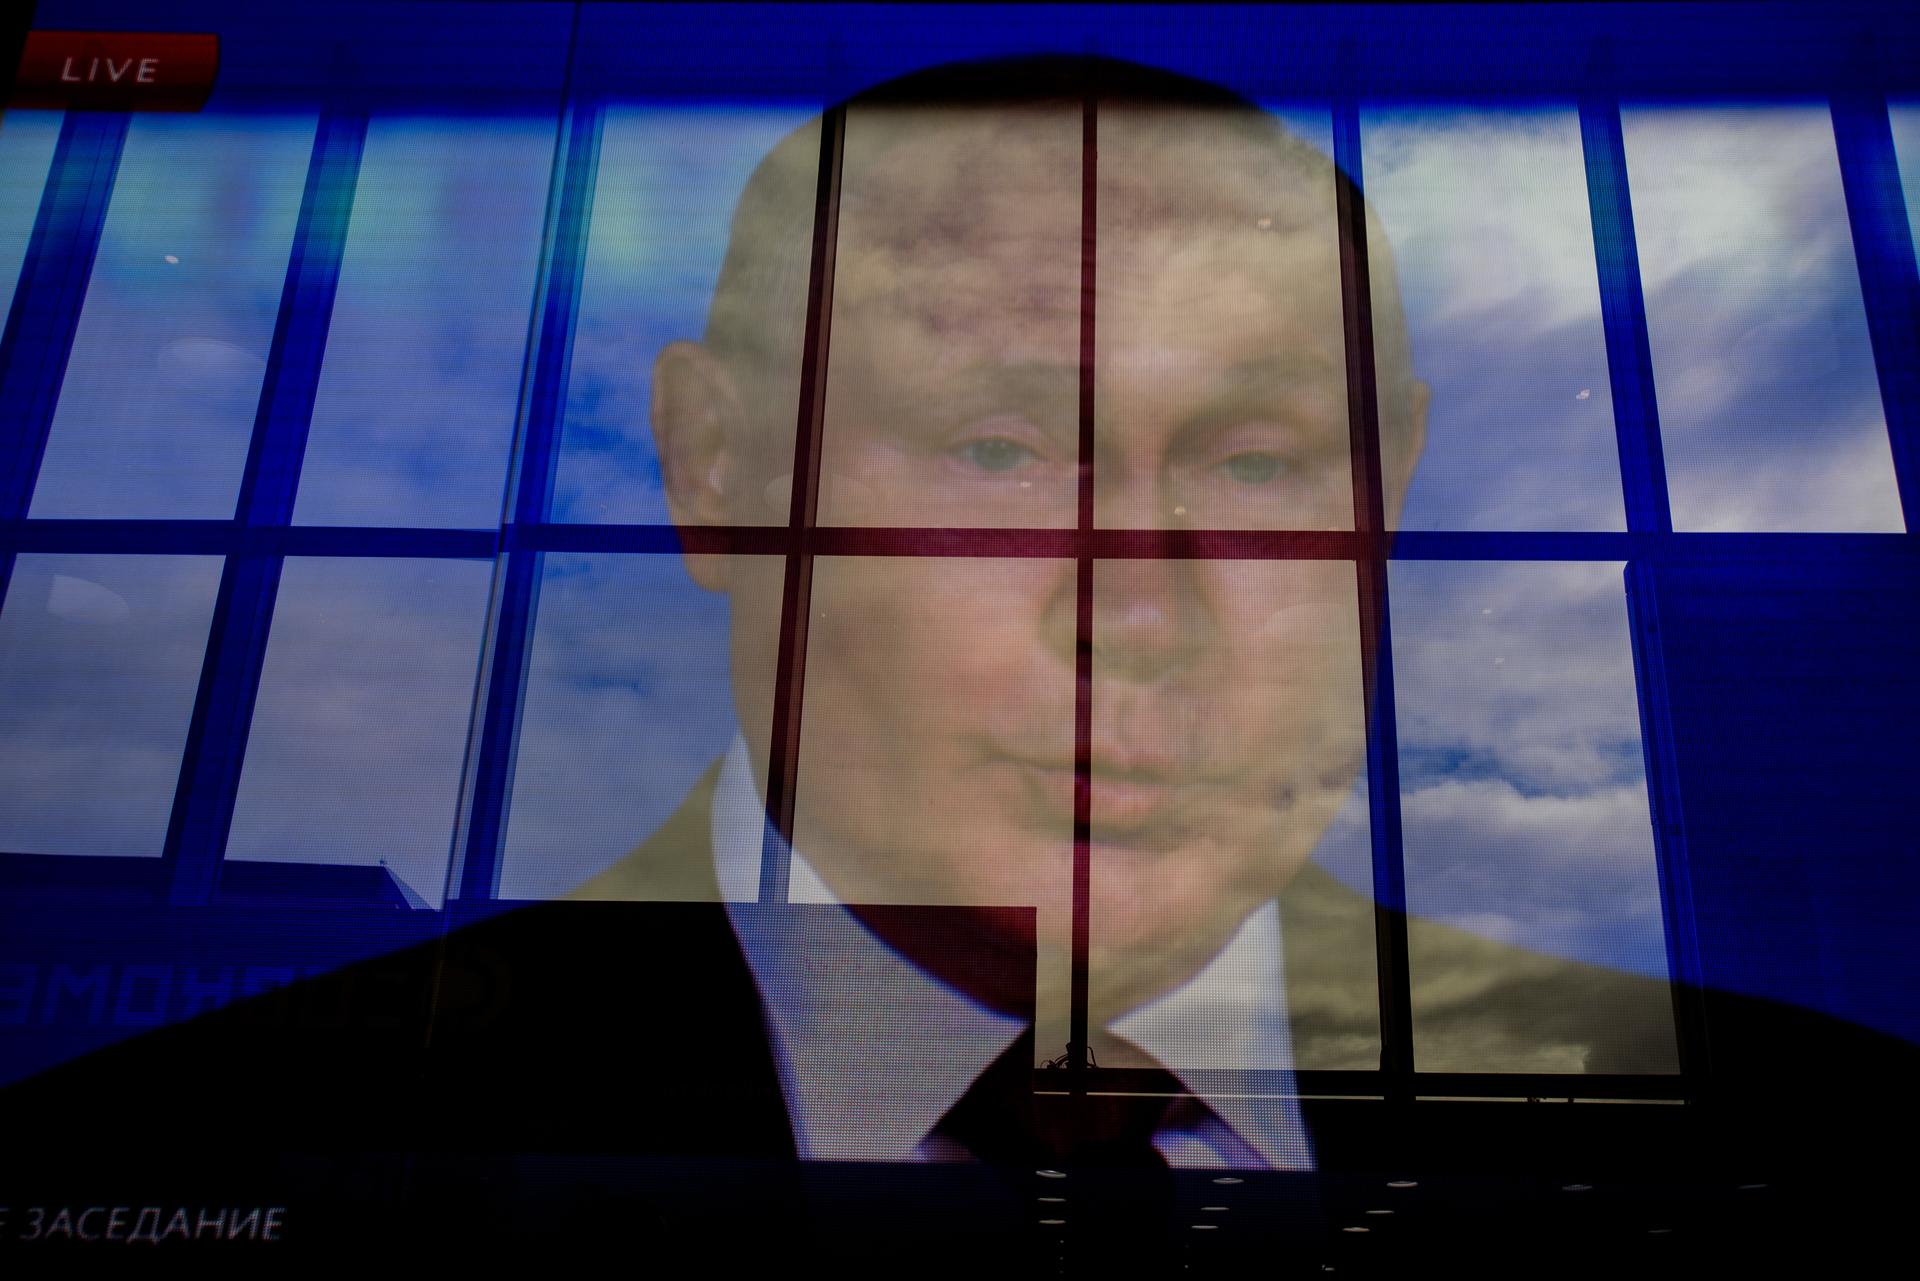 Арест активов. Портрет Путина. Фото Путина.